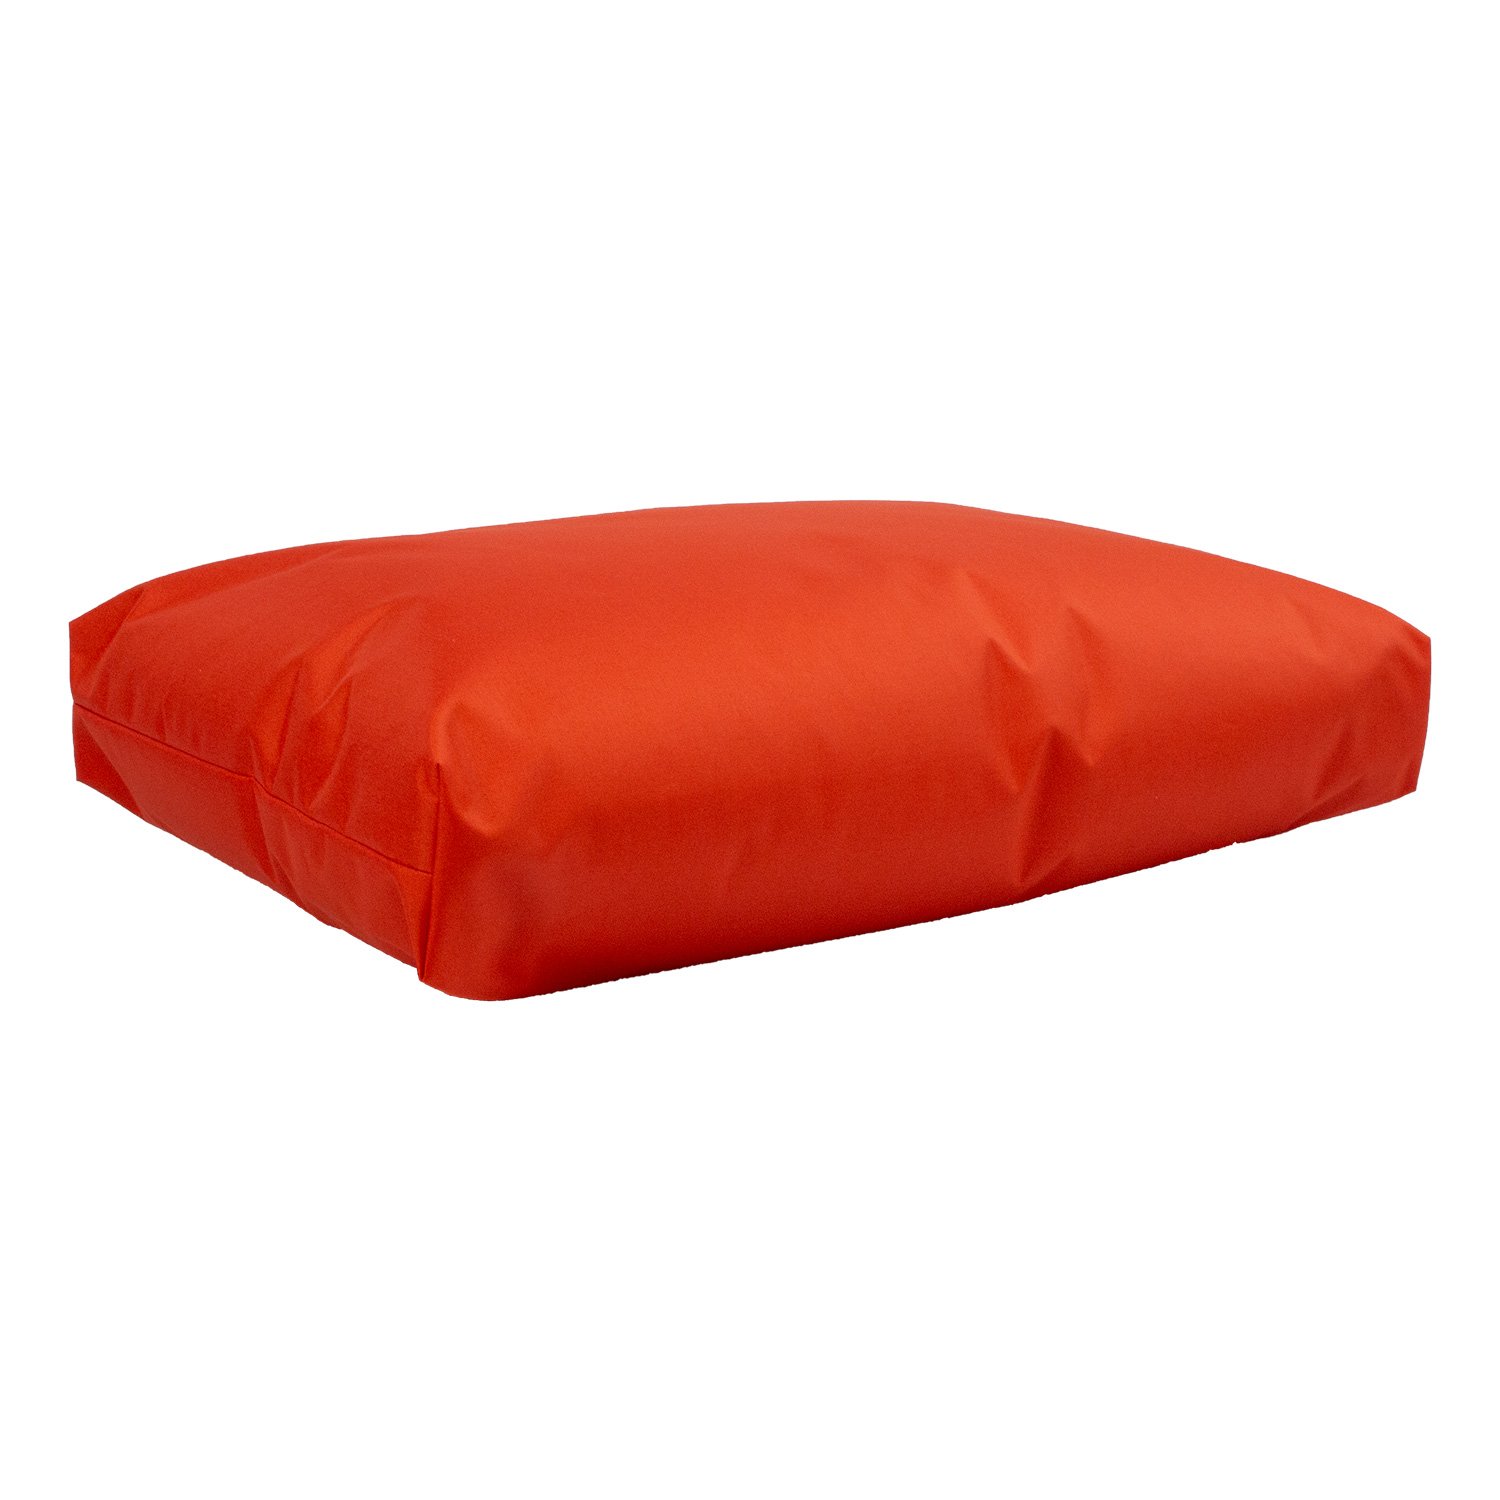 Grindų pagalvė MR. BIG 60x40xH16 cm, oranžinė